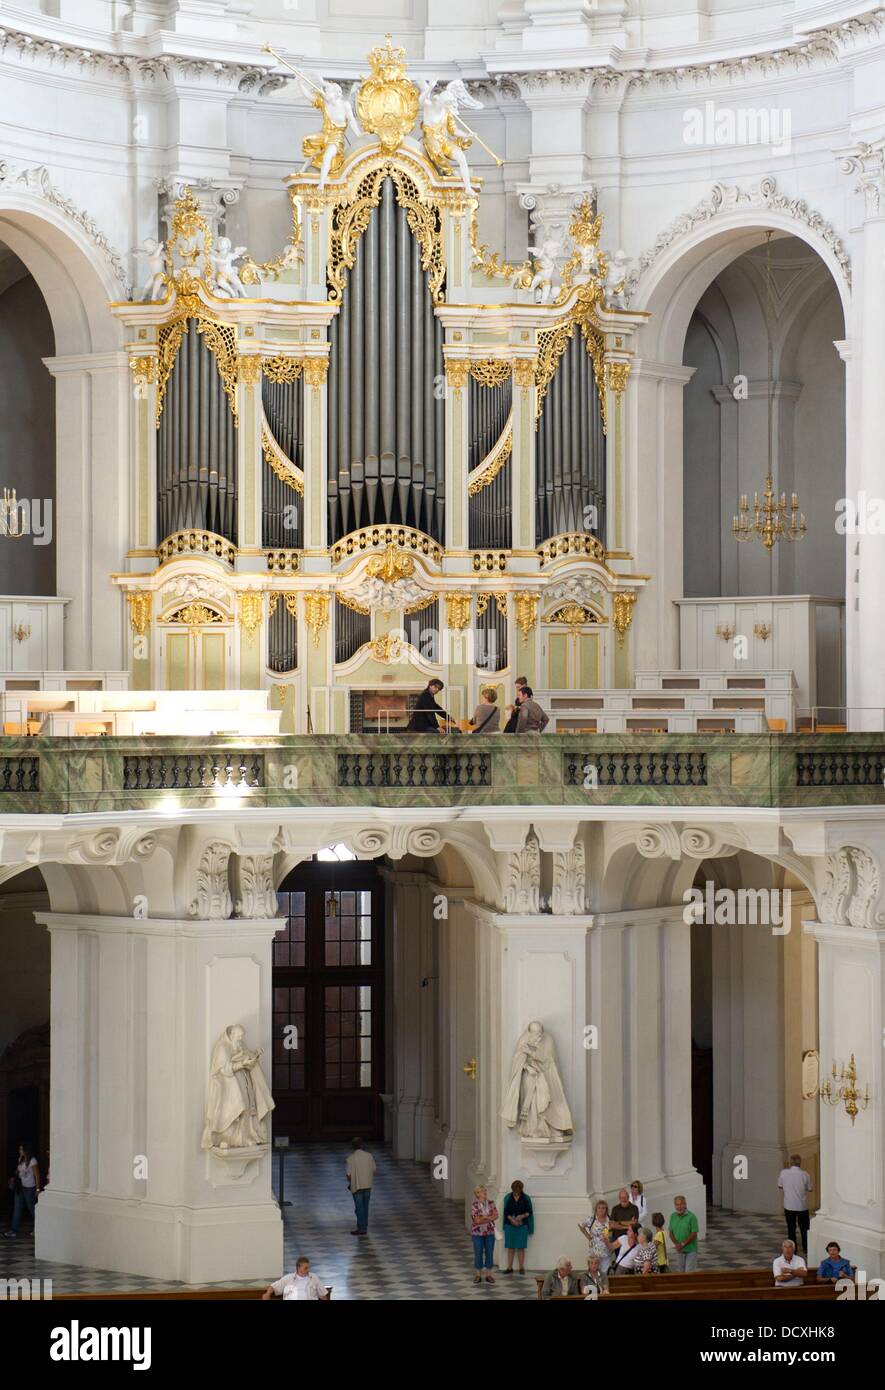 Vista dell'organo Silbermann nella cattedrale di Dresda, in Germania, il 22 agosto 2013. Il ventesimo Silbermann Giorni, che si svolgerà dal 04 al 15 settembre, la messa a fuoco di organi a canne del famoso produttore tedesco di organi a canne Gottfried Silbermann (1683-1753). Foto: Sebastian Kahnert Foto Stock